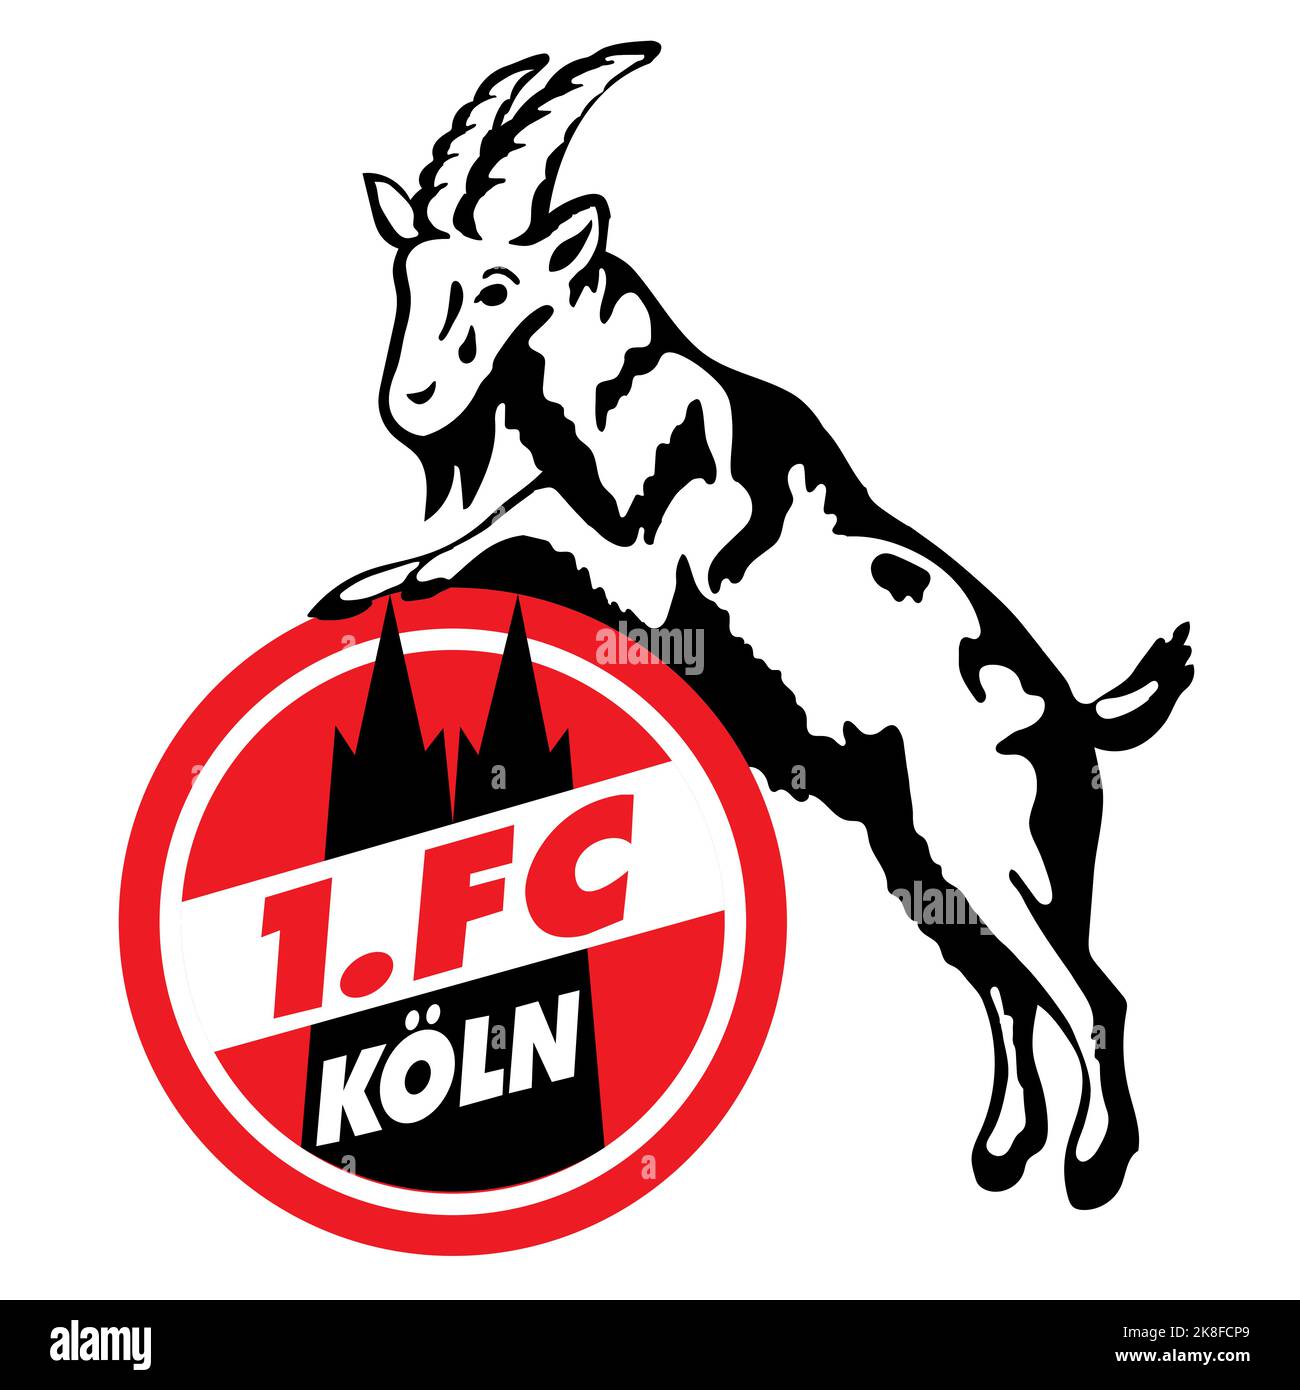 Francoforte sul meno, Germania - 10.23.2022 Logo della società calcistica tedesca di Colonia. Immagine vettoriale Illustrazione Vettoriale